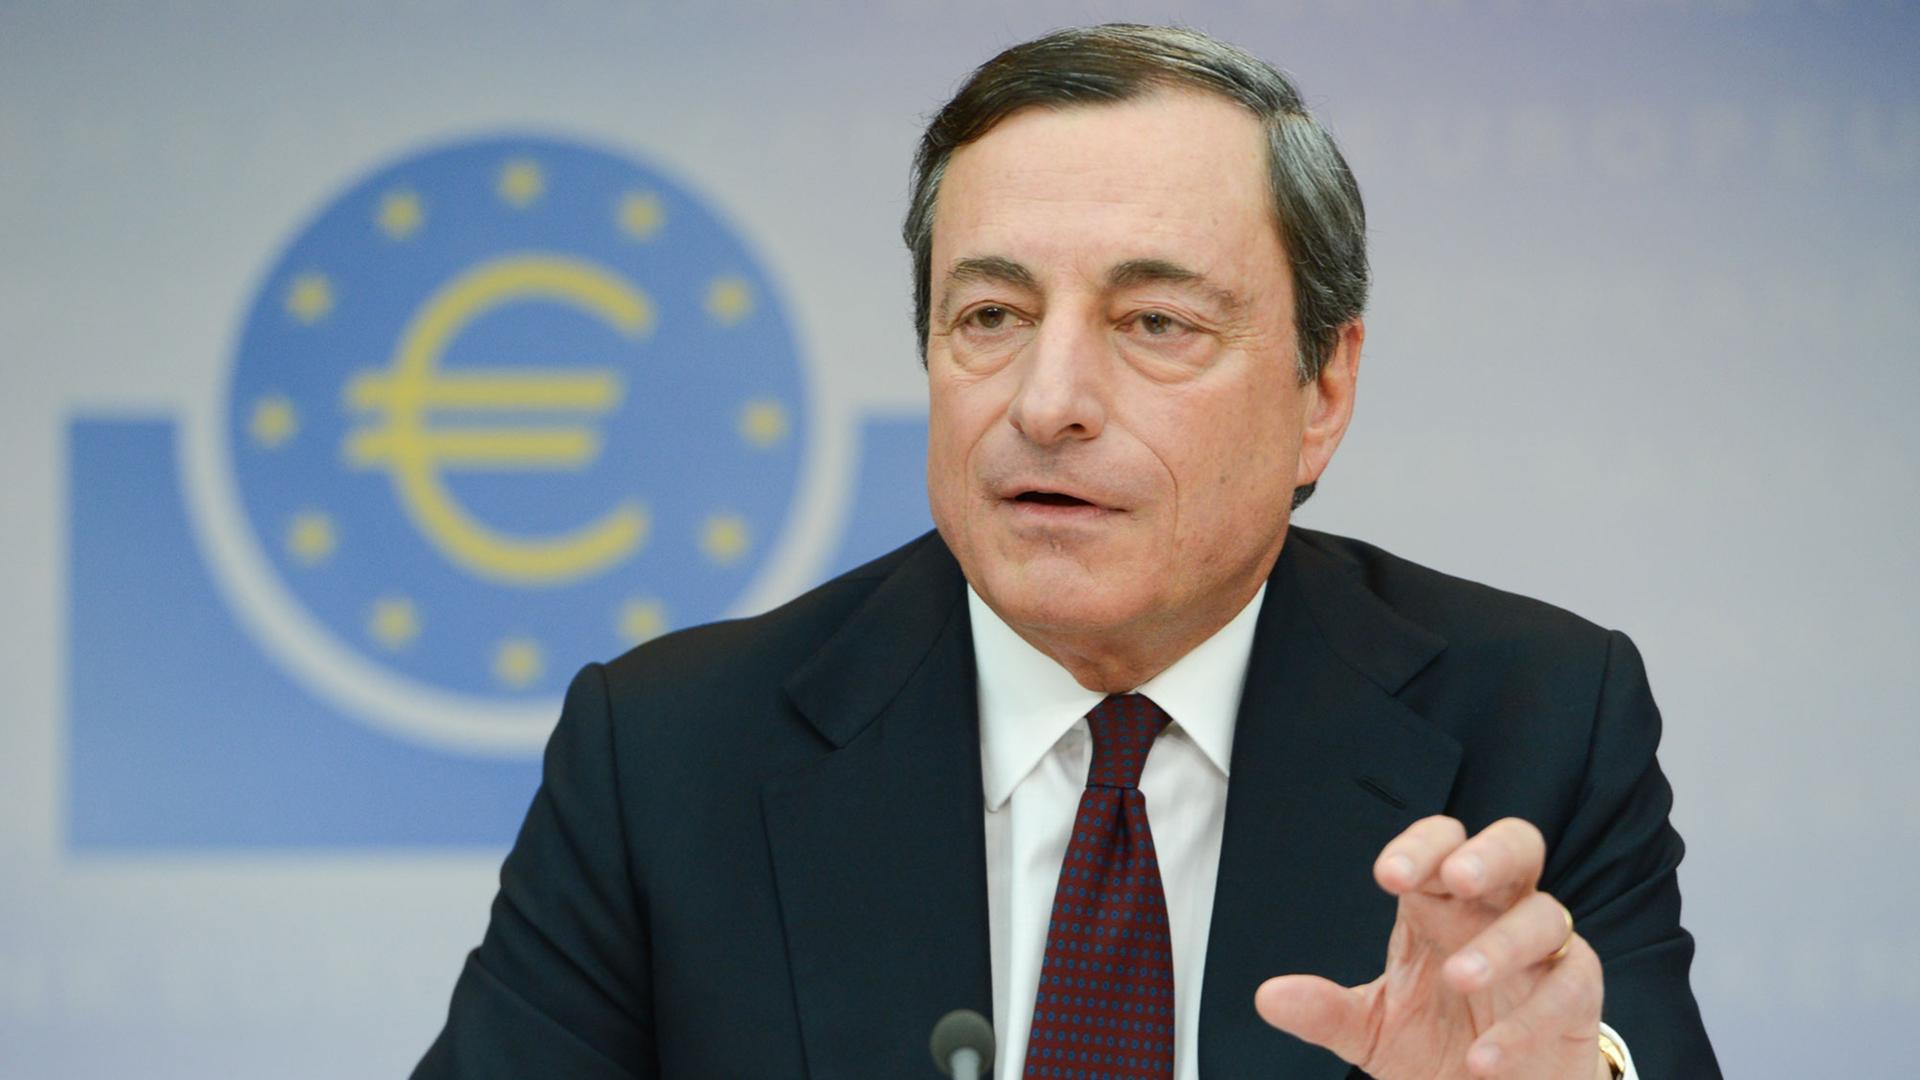 Mario Draghi, Präsident der Europäischen Zentralbank (EZB)